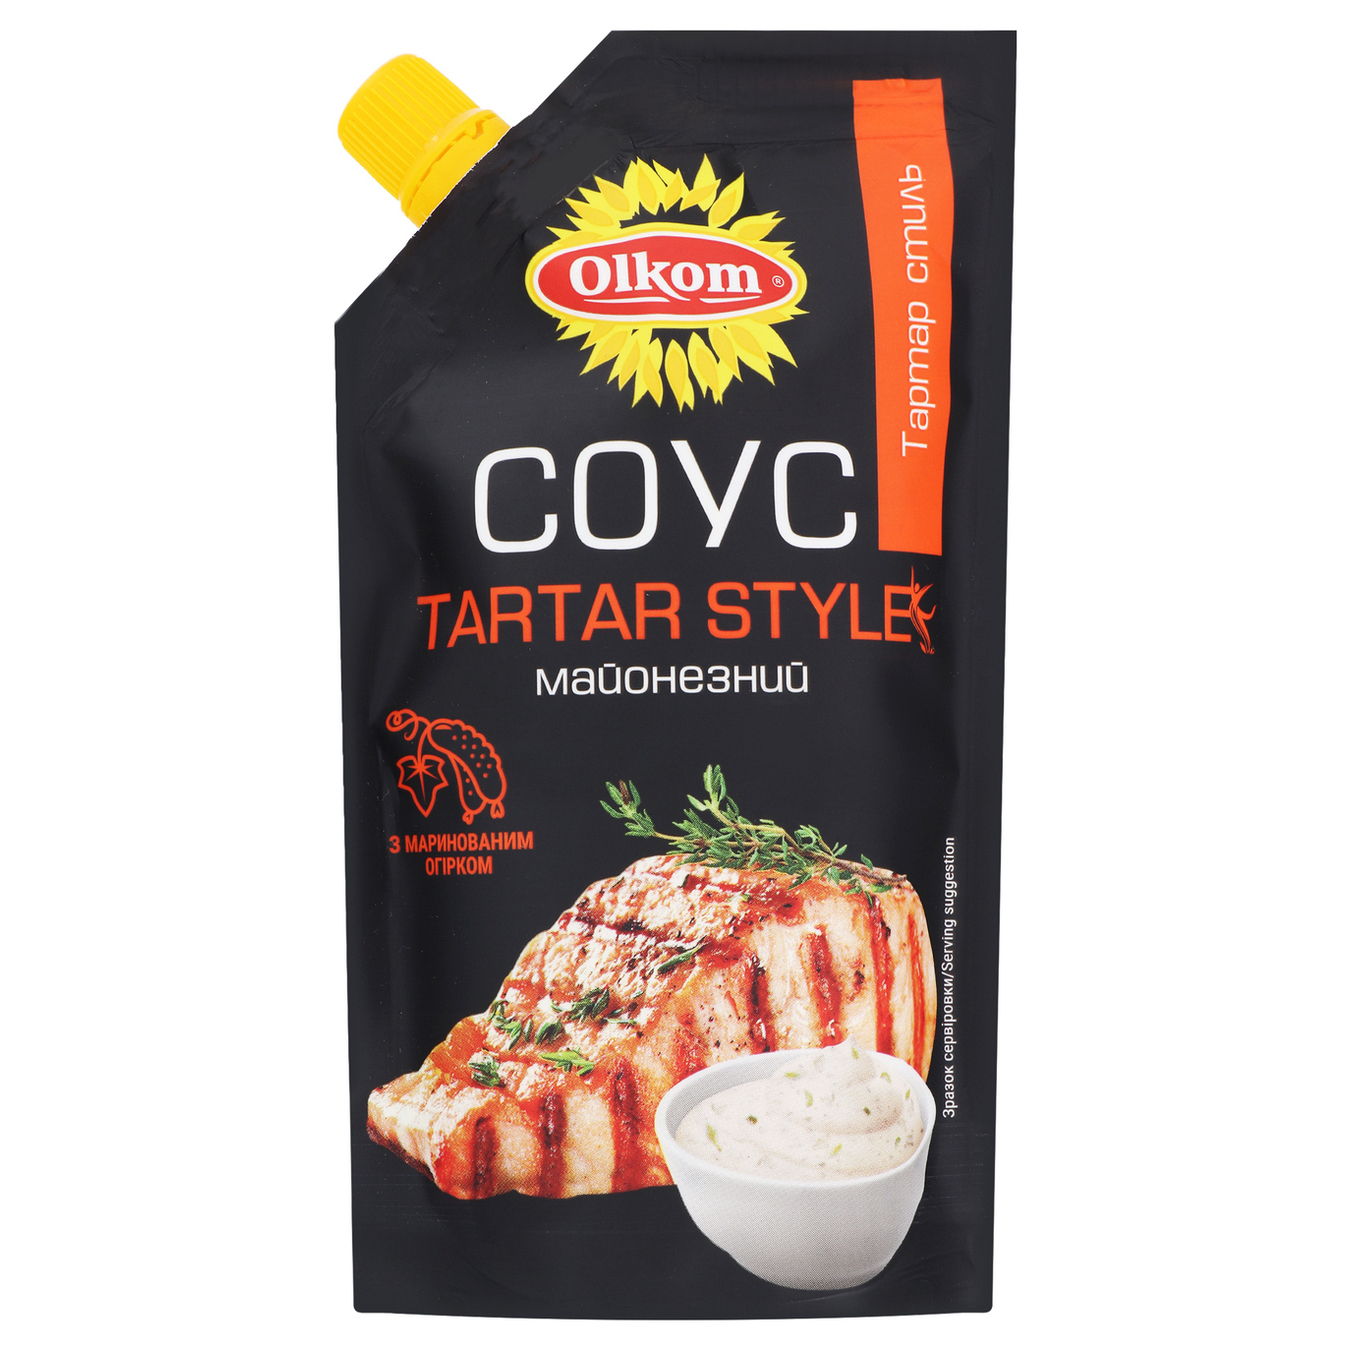 Olkom Tartar style mayonnaise sauce 45,3% 180g